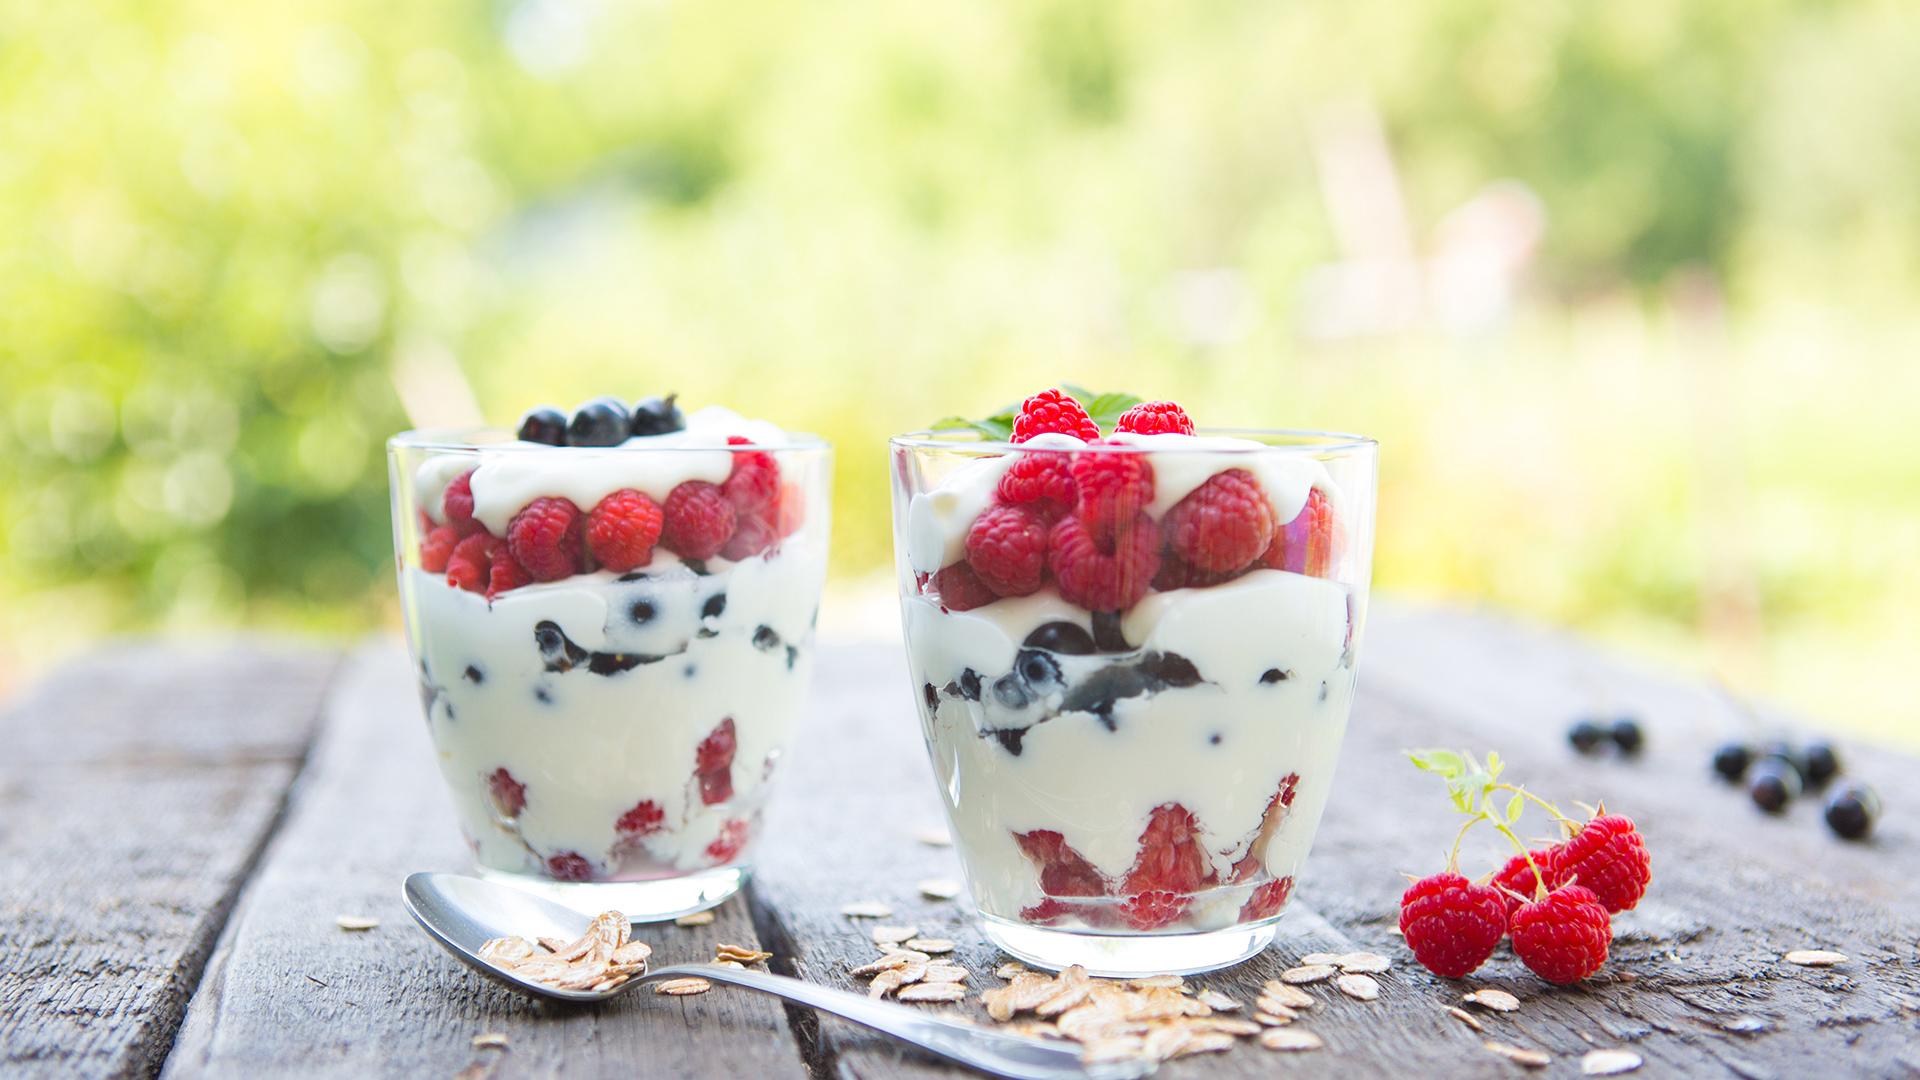 Los probióticos del yogur aporta son beneficioso para la salud cuando se ingieren en las cantidades adecuadas (Getty Images)